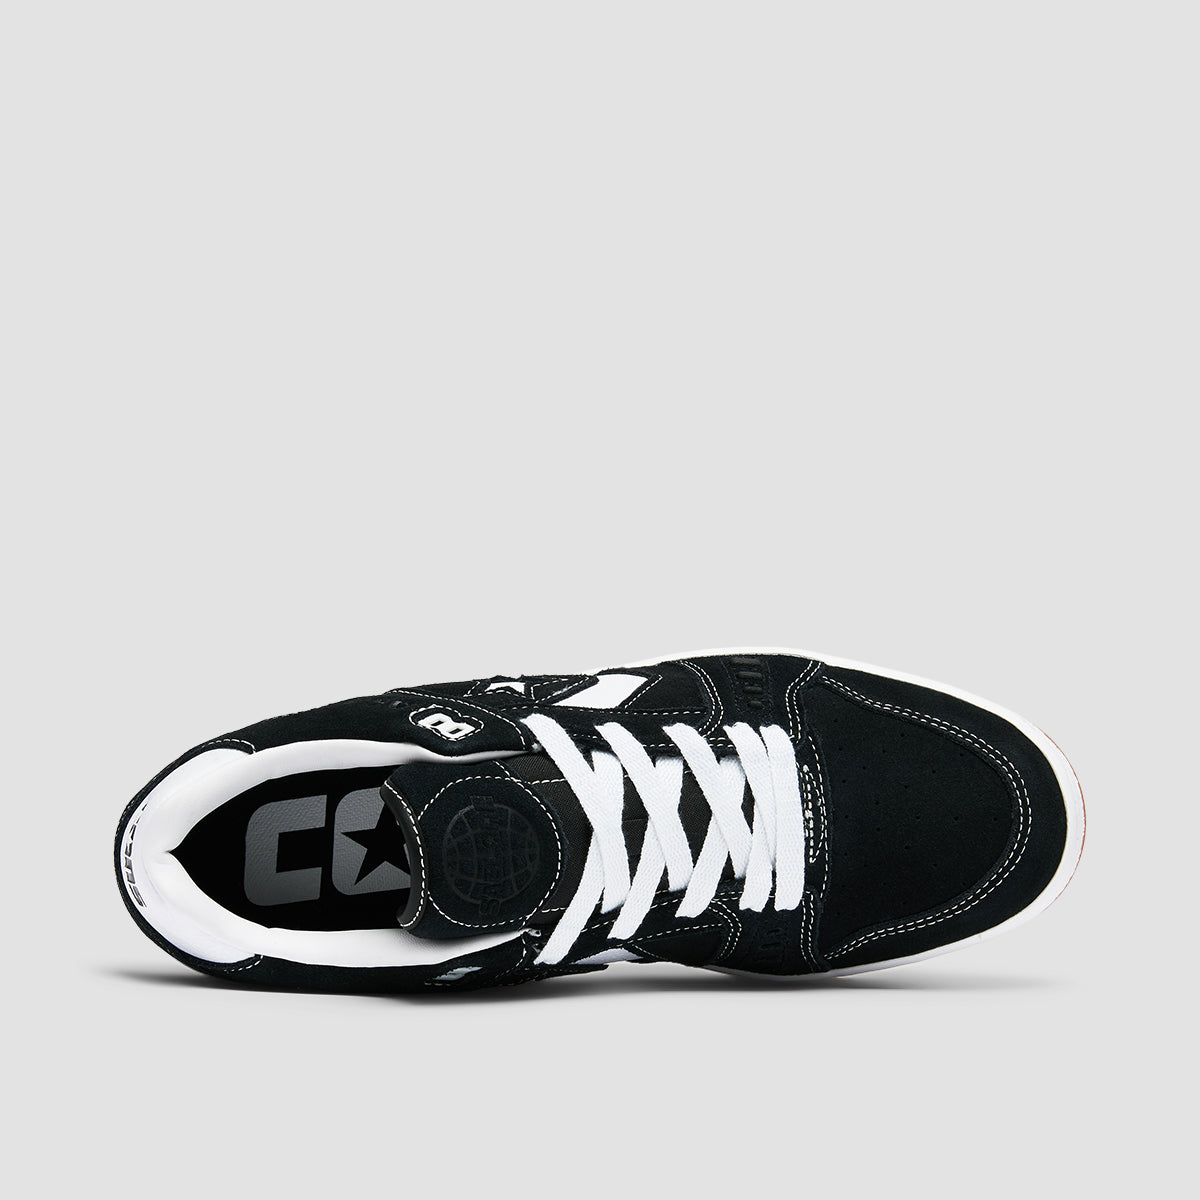 Converse AS-1 Pro Shoes - Black/White/Gum